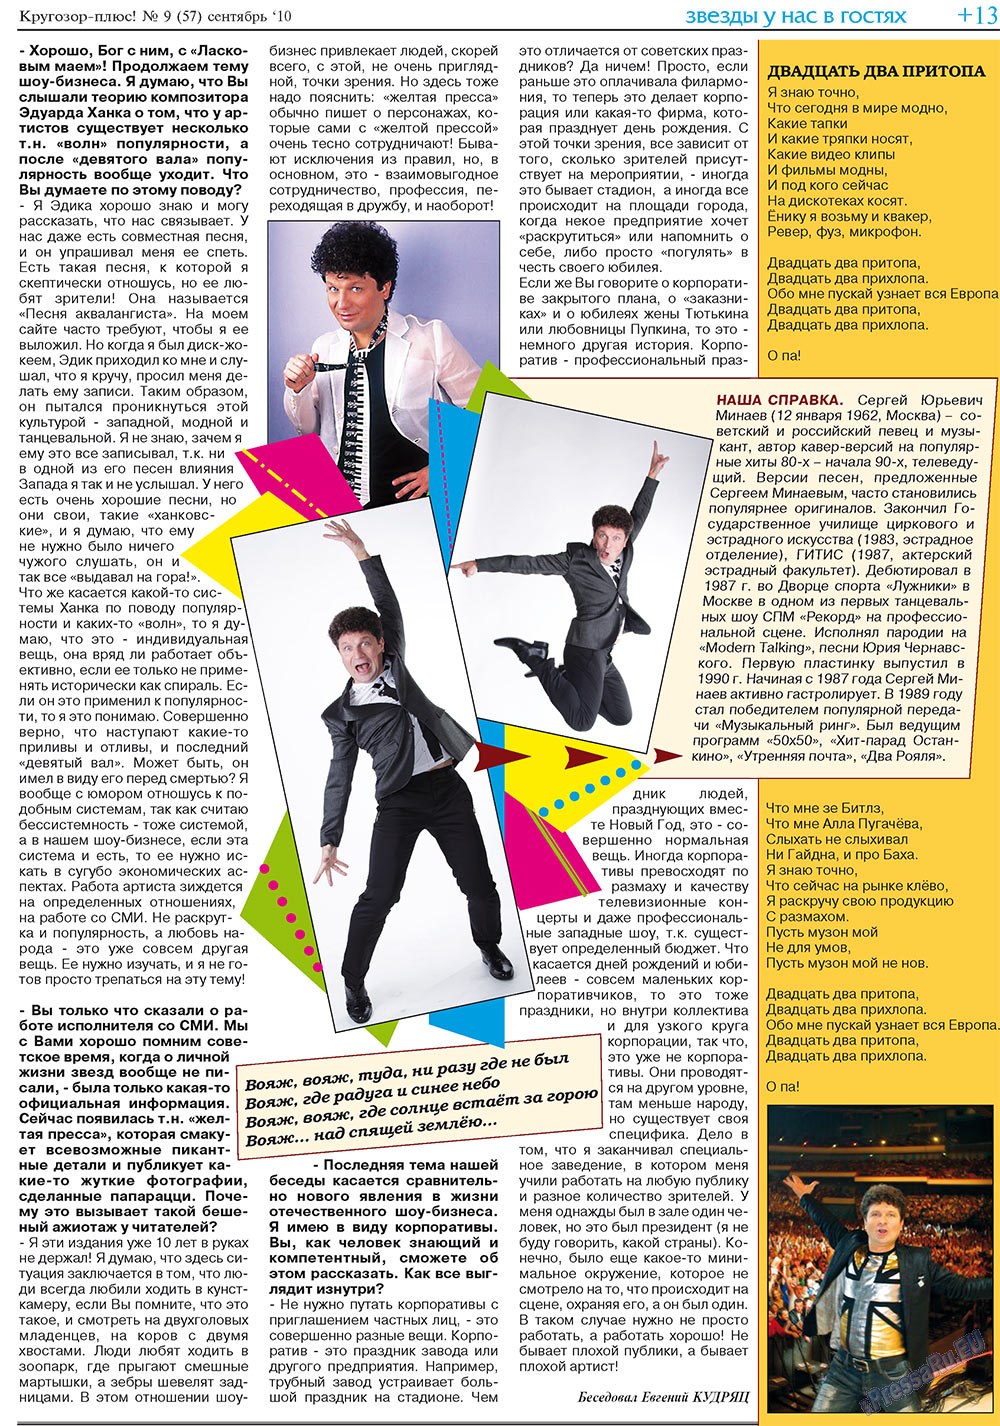 Кругозор плюс!, газета. 2010 №9 стр.29